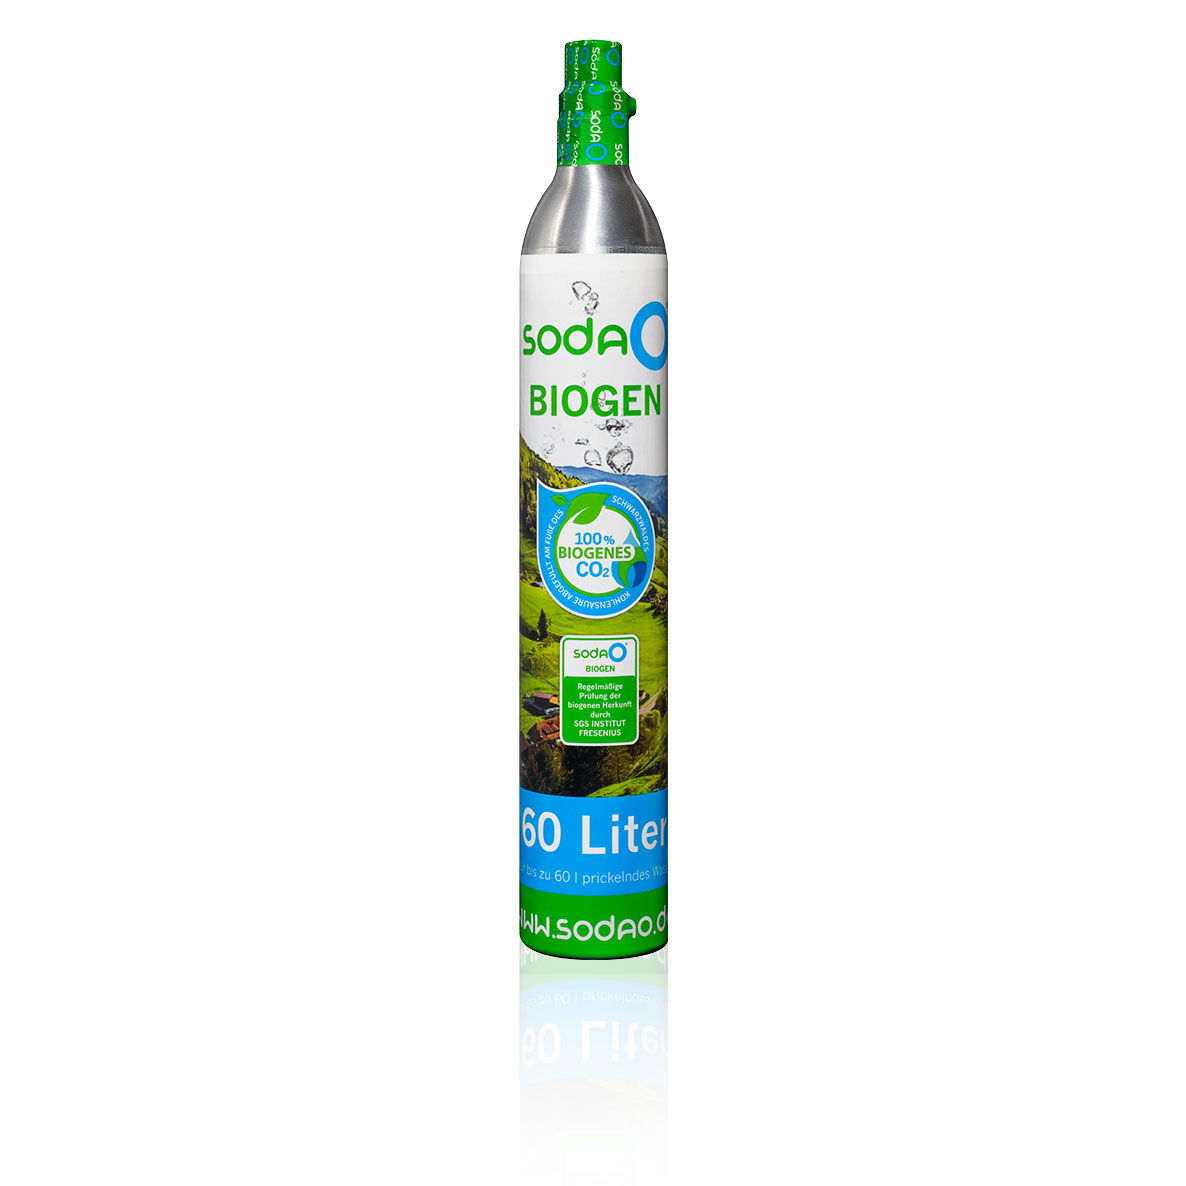 1 x sodaO-BIOGEN-CO2-Neukauf-Zylinder (1x425g) für bis zu 60 Ltr. Soda-Wasser